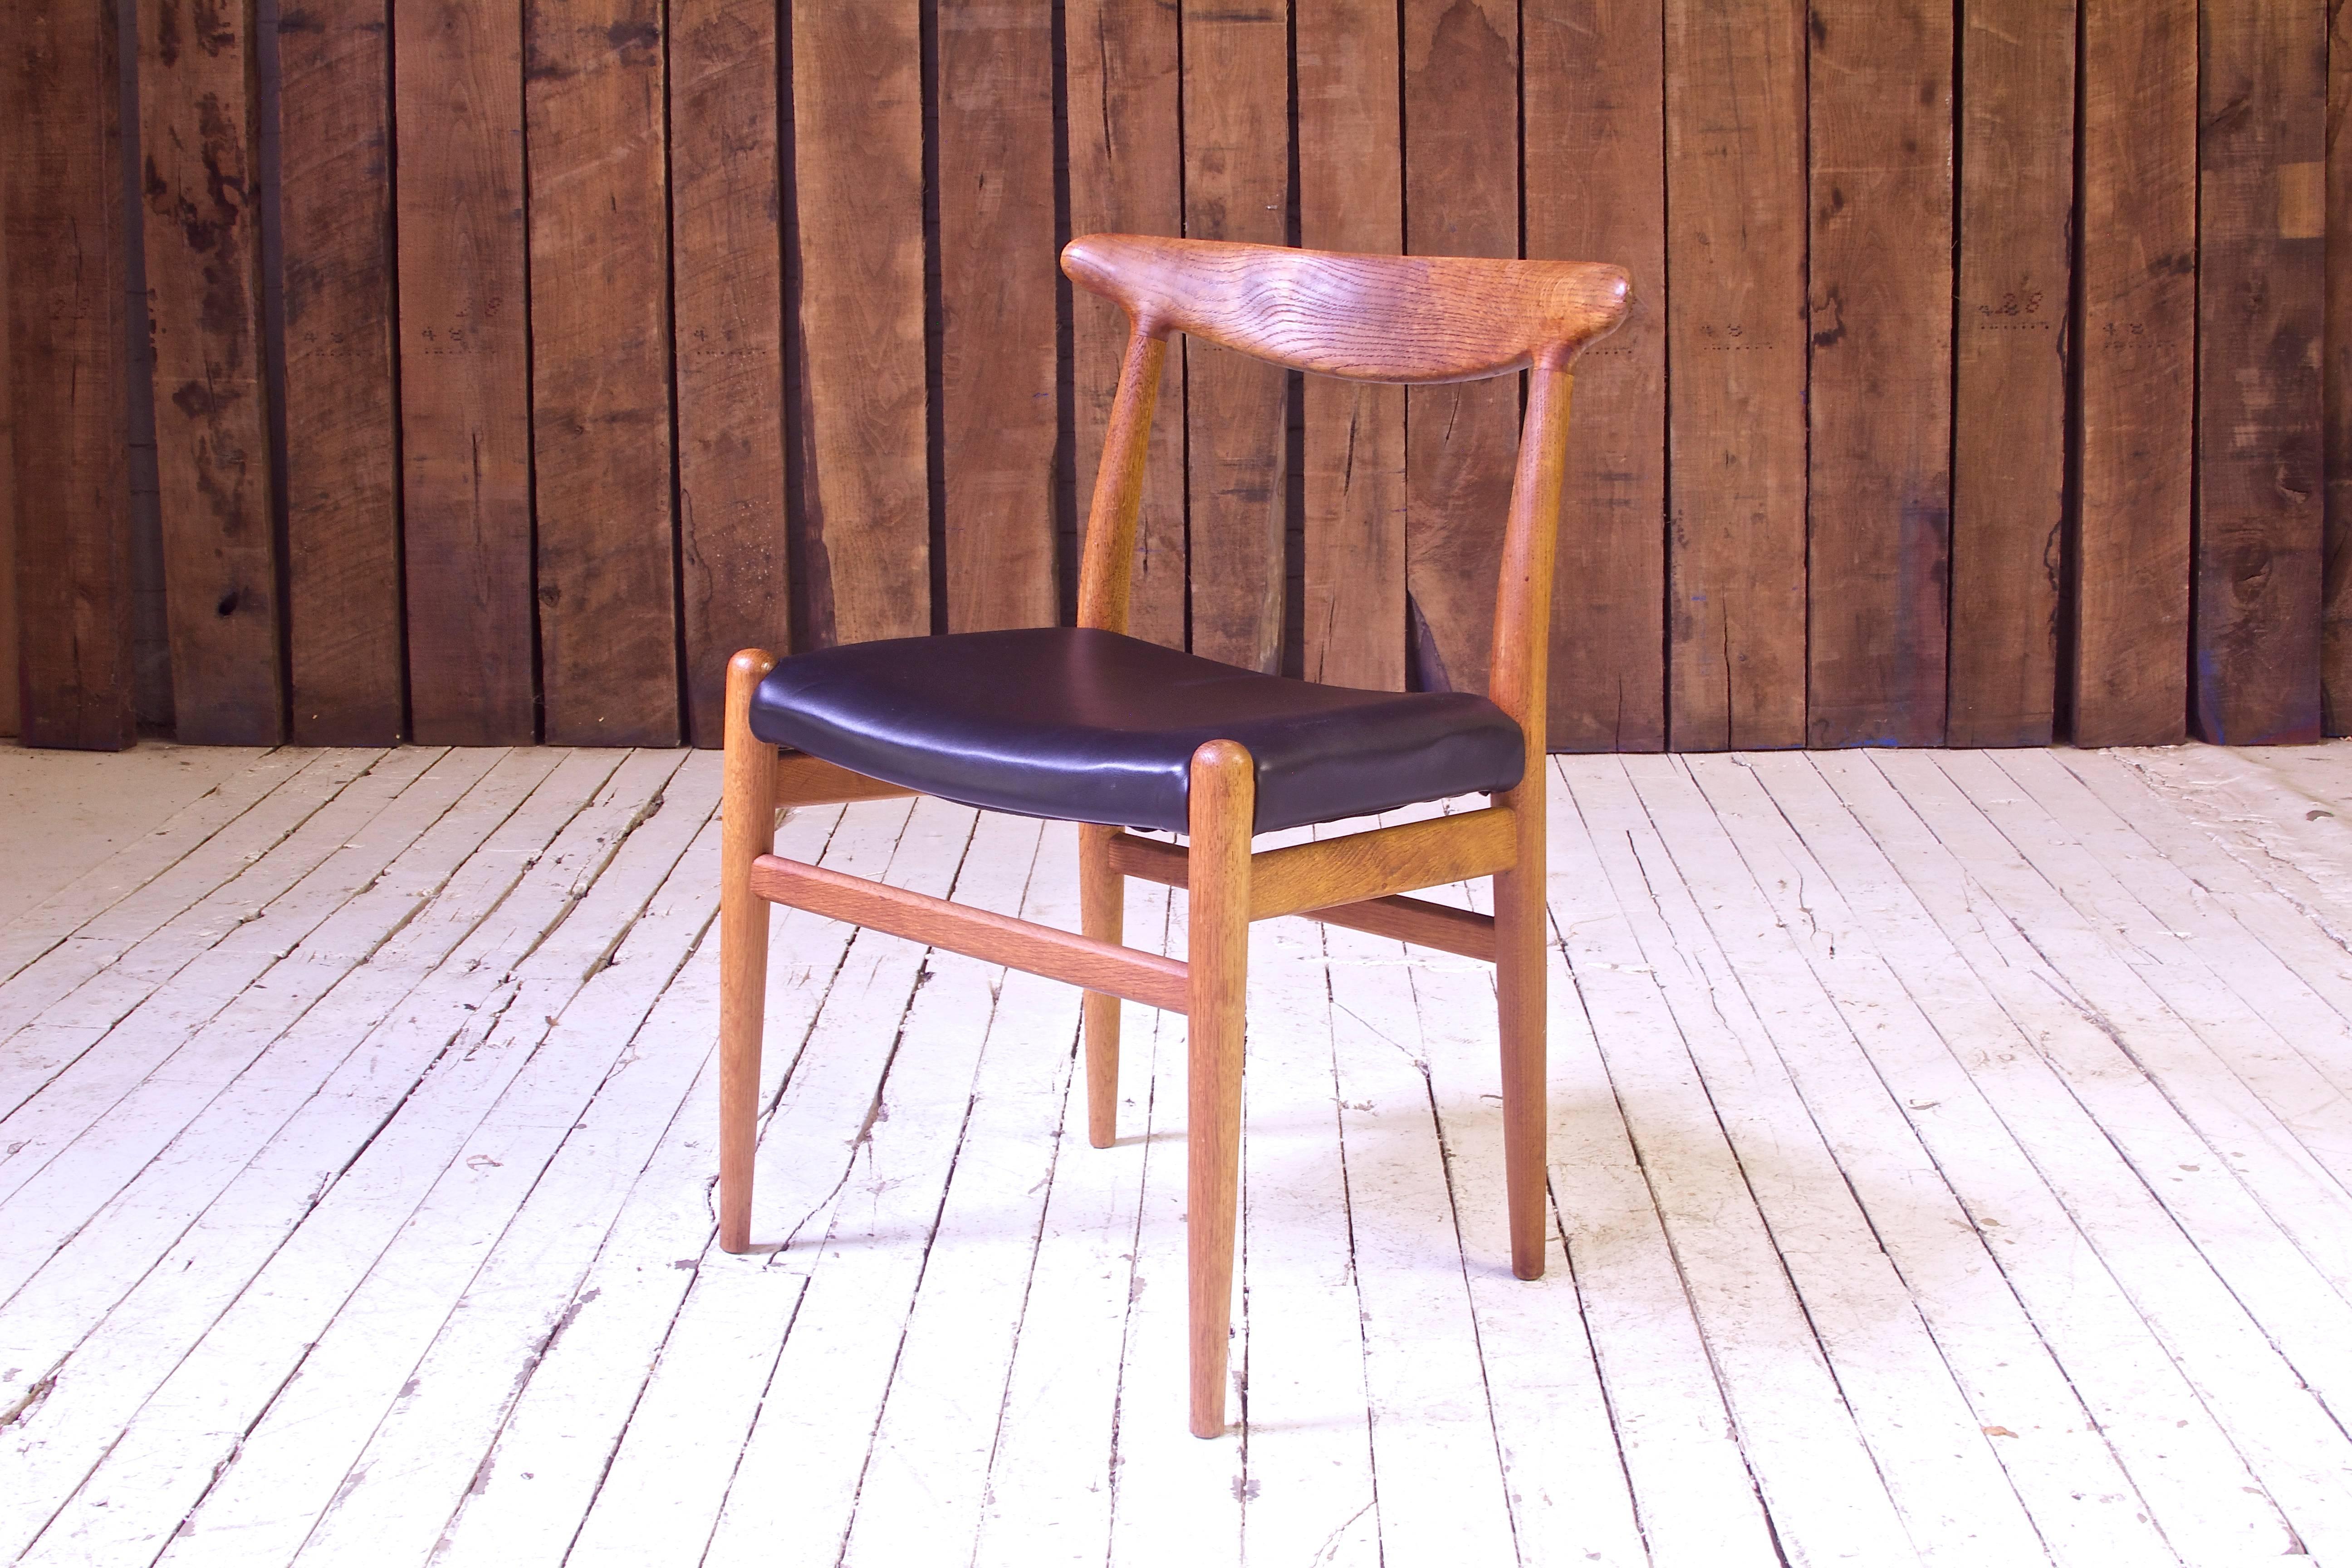 Ein schönes Beispiel für das Frühwerk des Meisters des Sitzdesigns des 20. Jahrhunderts, Hans J. Wegner. Die hier verwendete skulpturale Rückenlehne aus Eichenholz wurde als Teil einer Familie innovativer Sitzmöbelentwürfe der 1950er Jahre